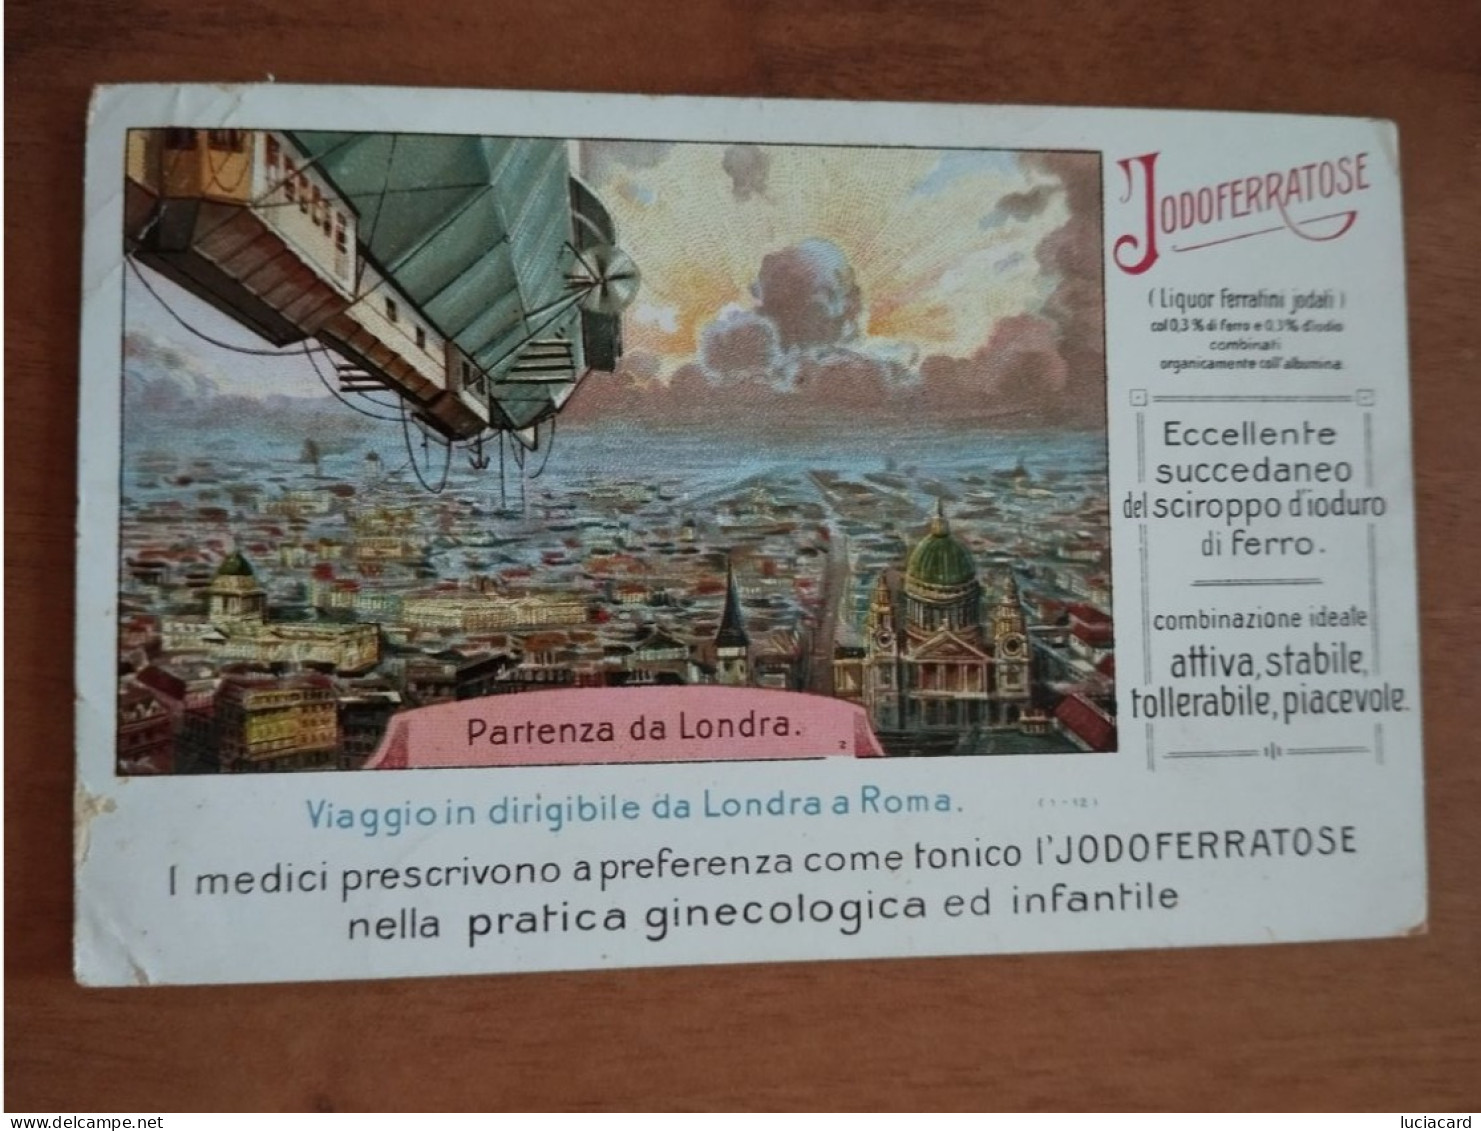 PUBBLICITARIA TONICO JODOFERRATOSE MEDICINALE -VIAGGIO IN DIRIGIBILE DA LONDRA A ROMA - Advertising